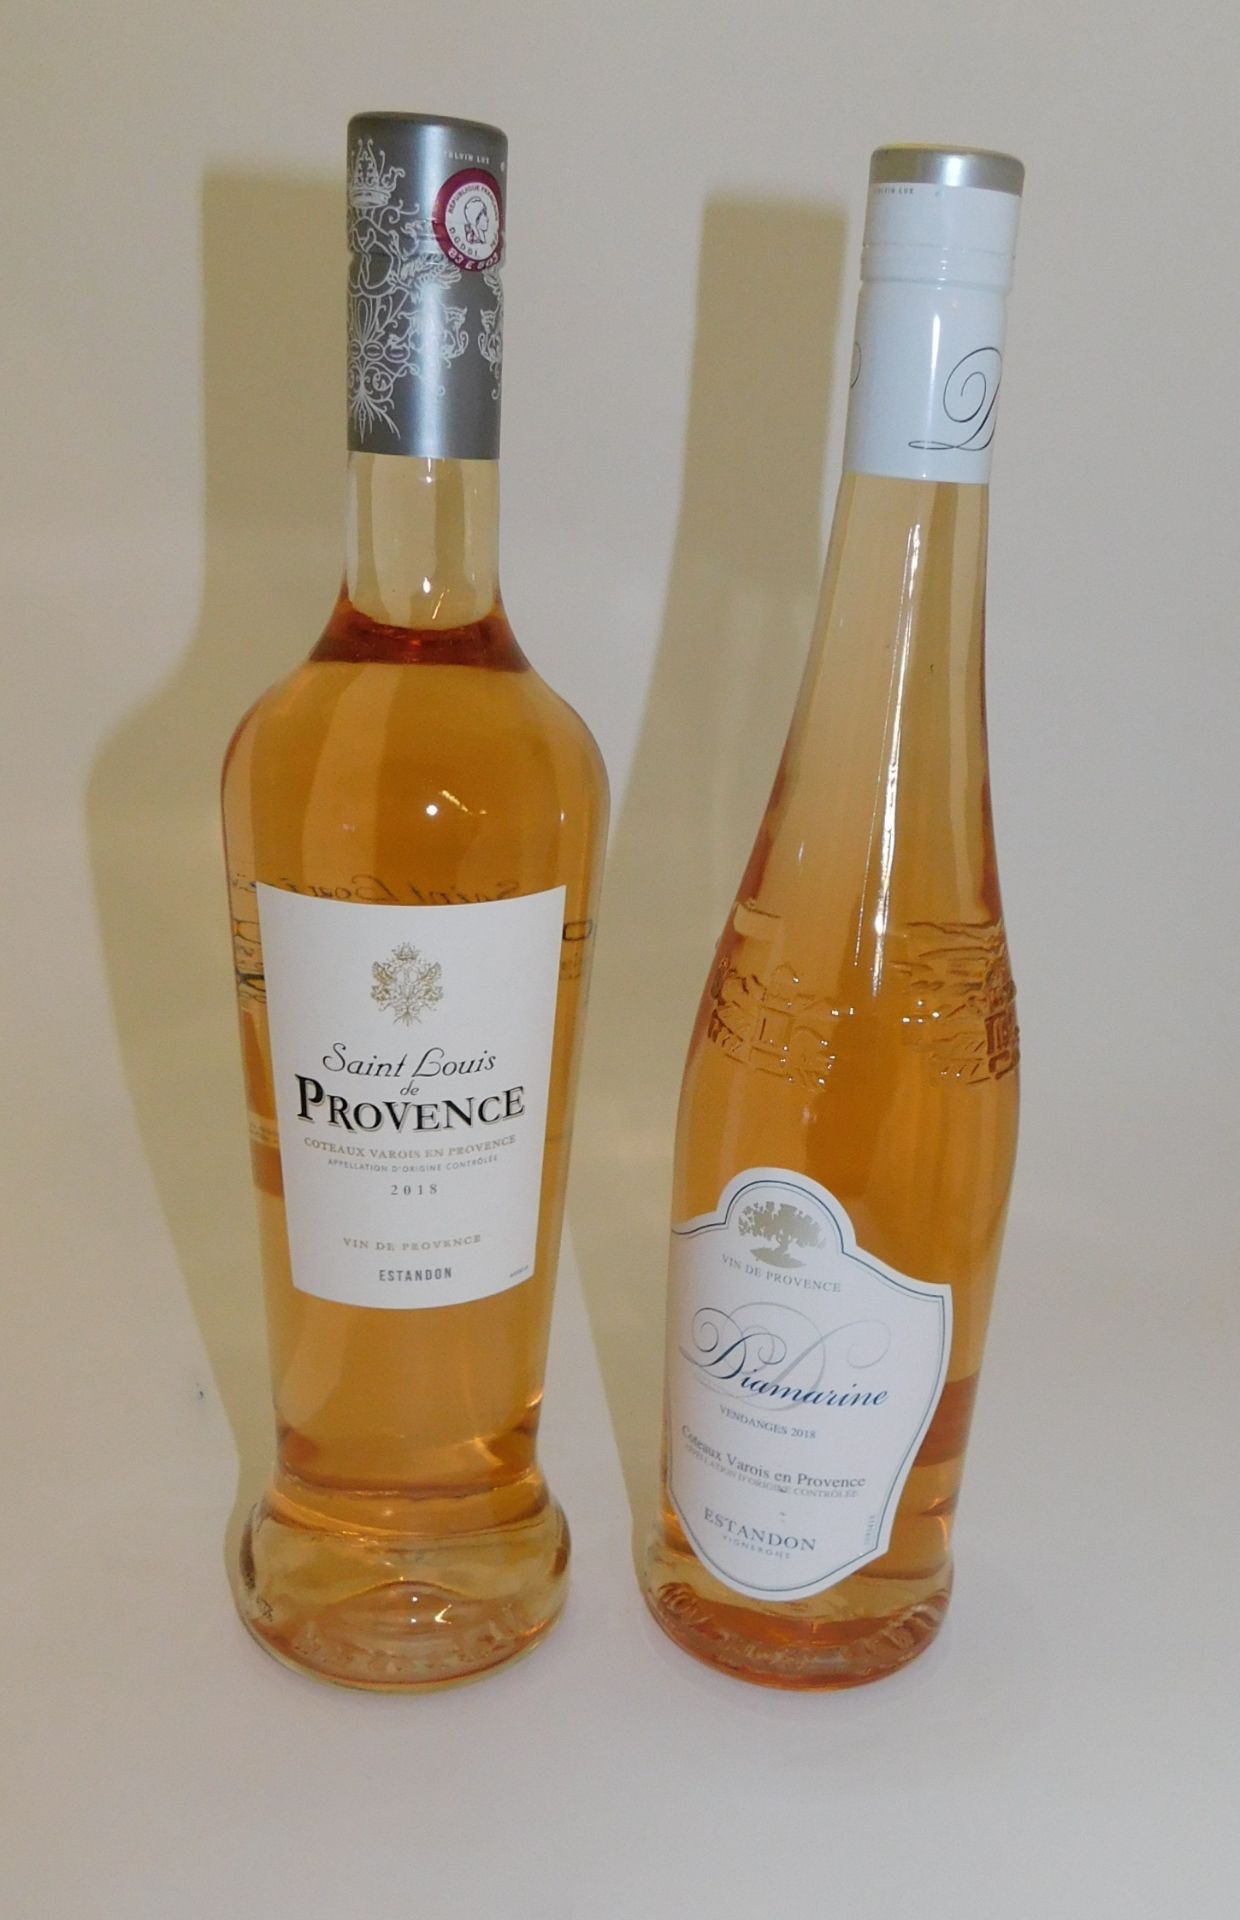 30 Bottles to include 12 Estandon Diamarine Coteaux Varois en Provence Rose, 75cl, 18 Estandon Saint